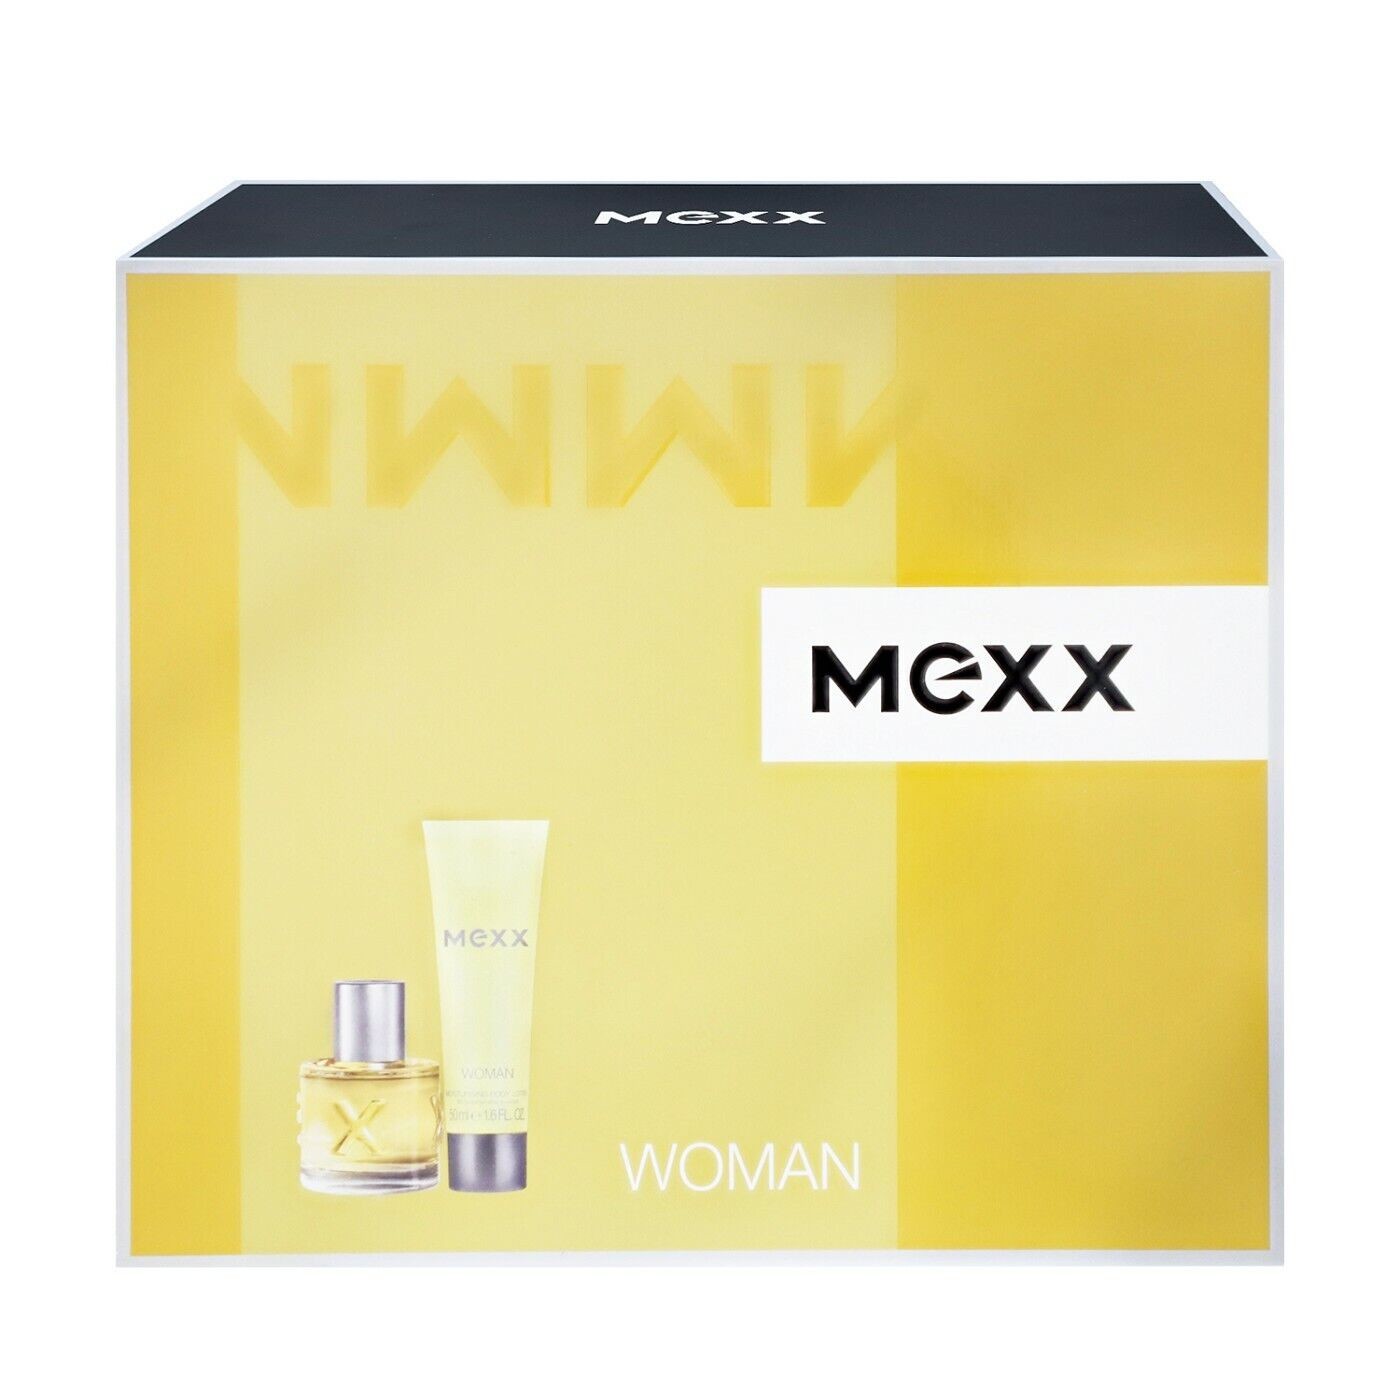 Mexx WOMAN Body Lotion 50ml und EdT 20ml Geschenkset für Frauen